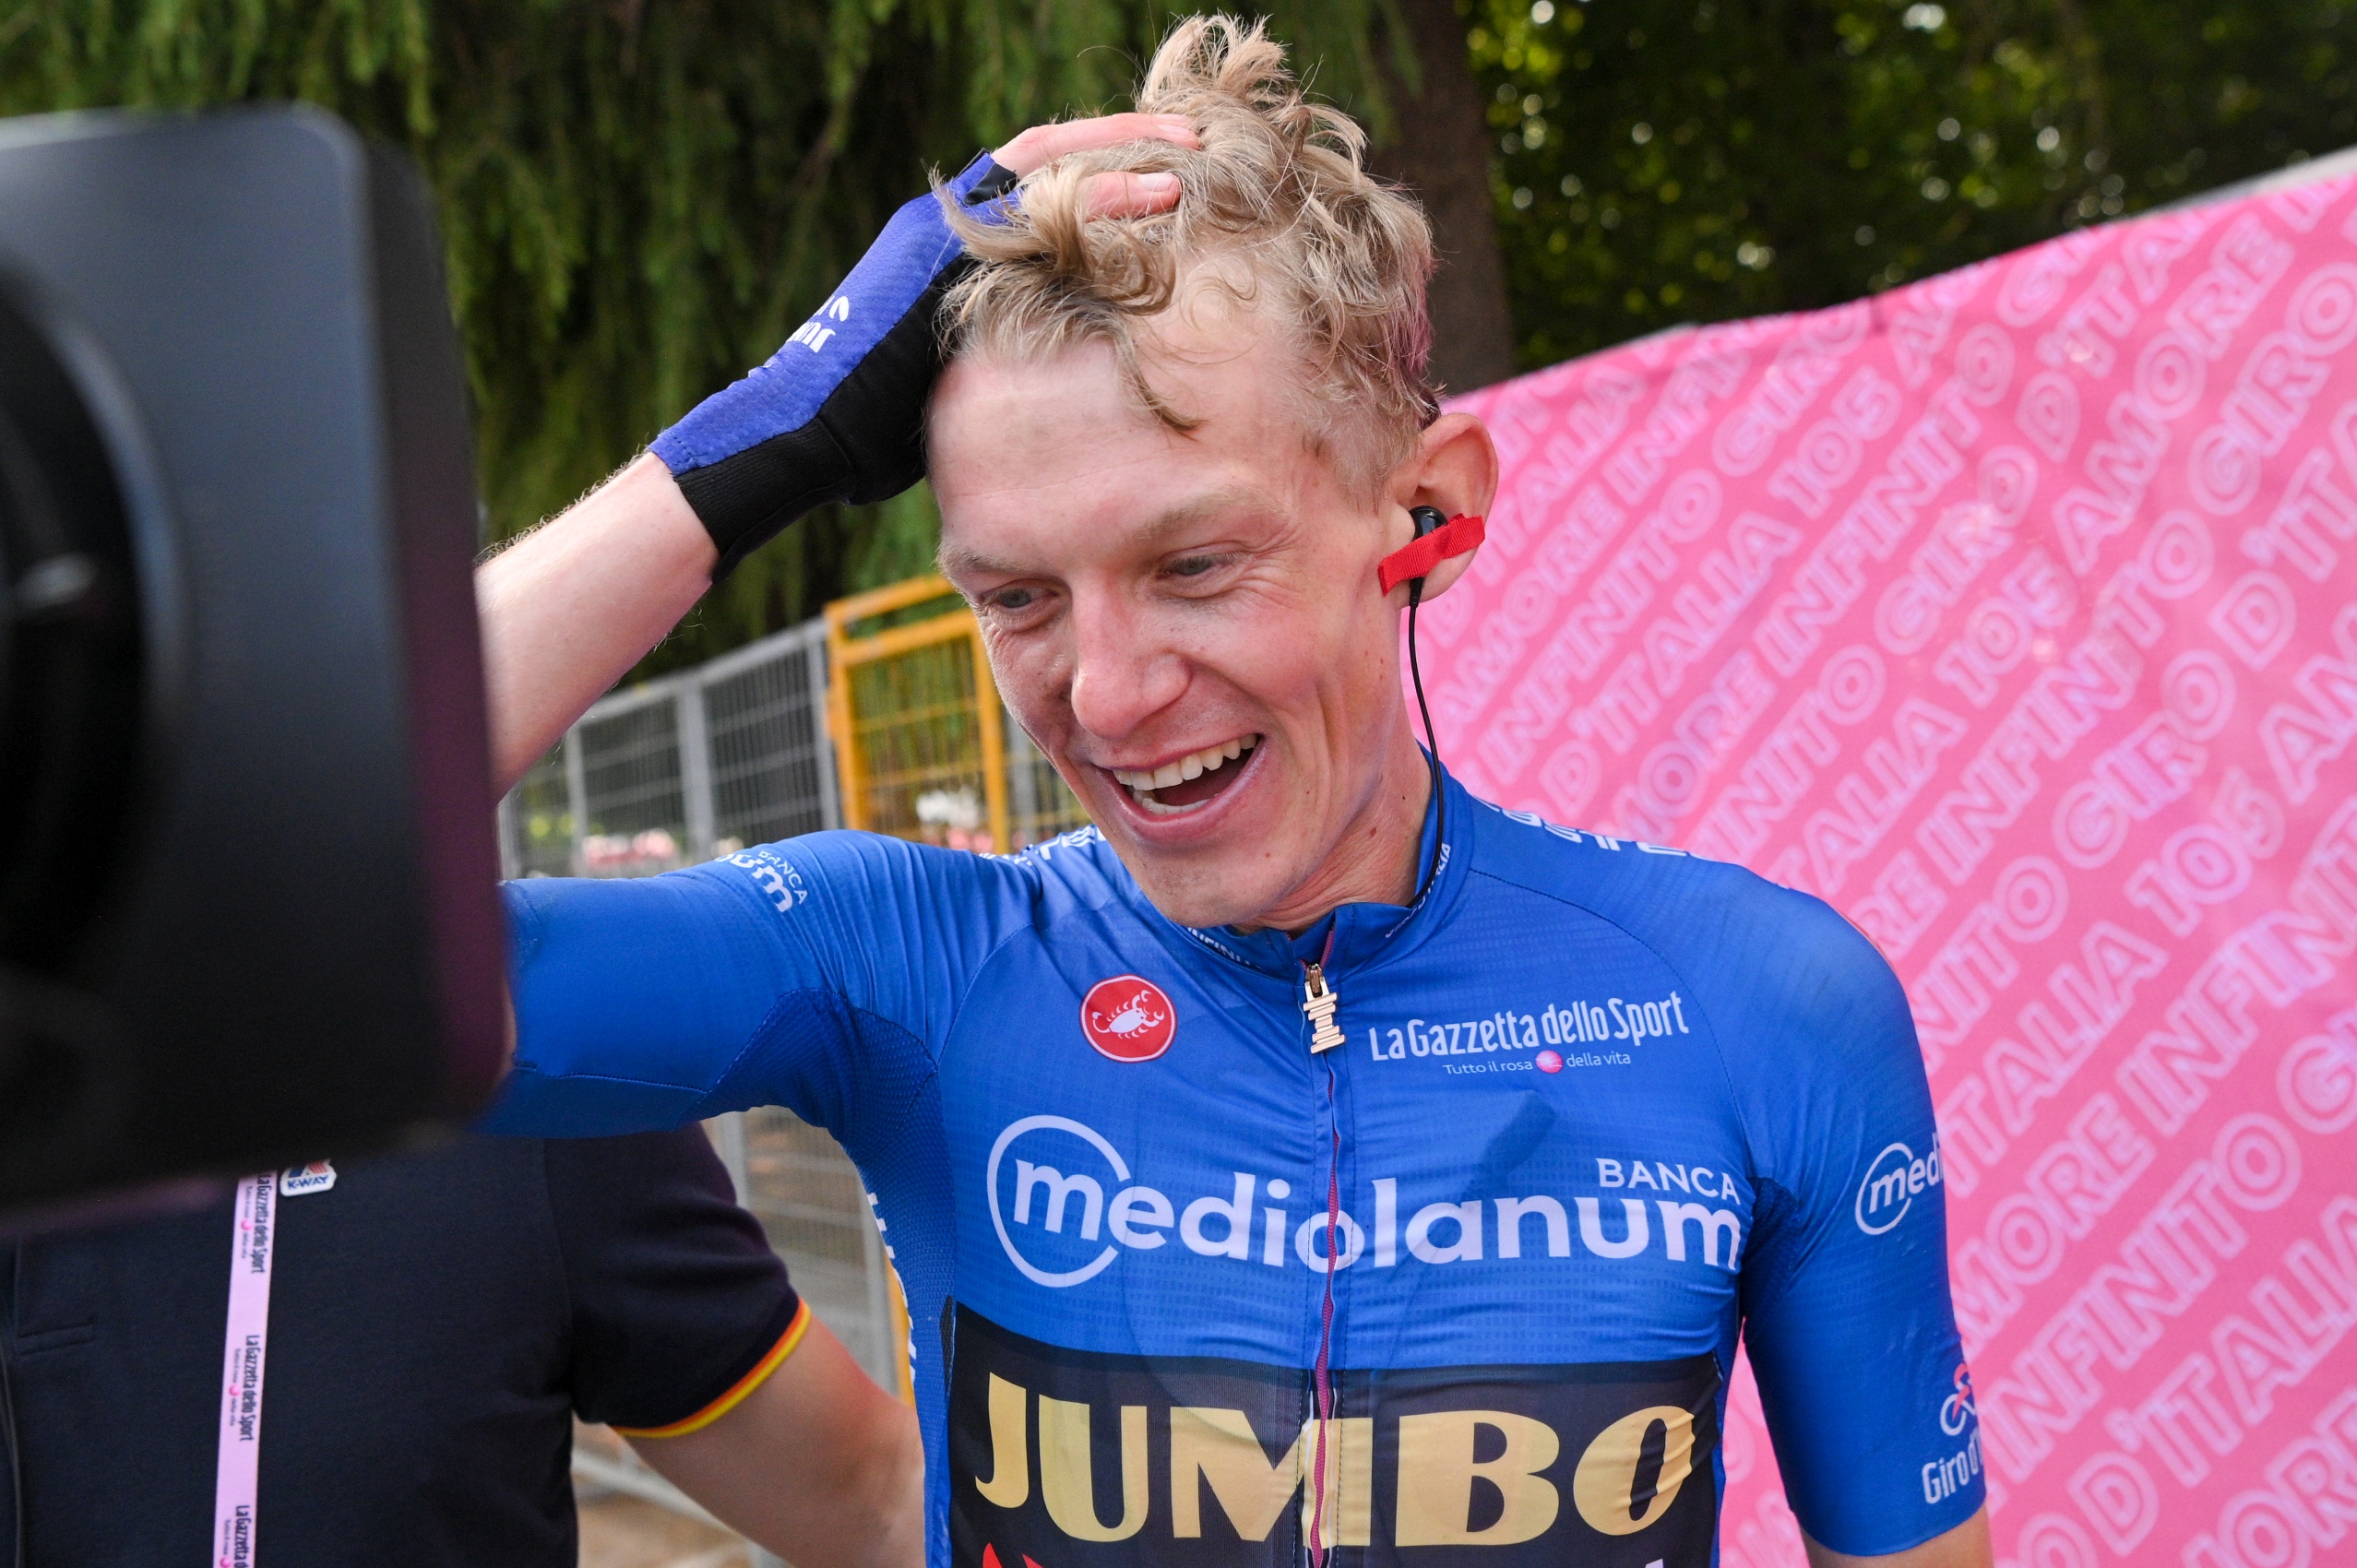 Koen Bouwman na mecie etapu Giro d'Italia w maglia azzurra